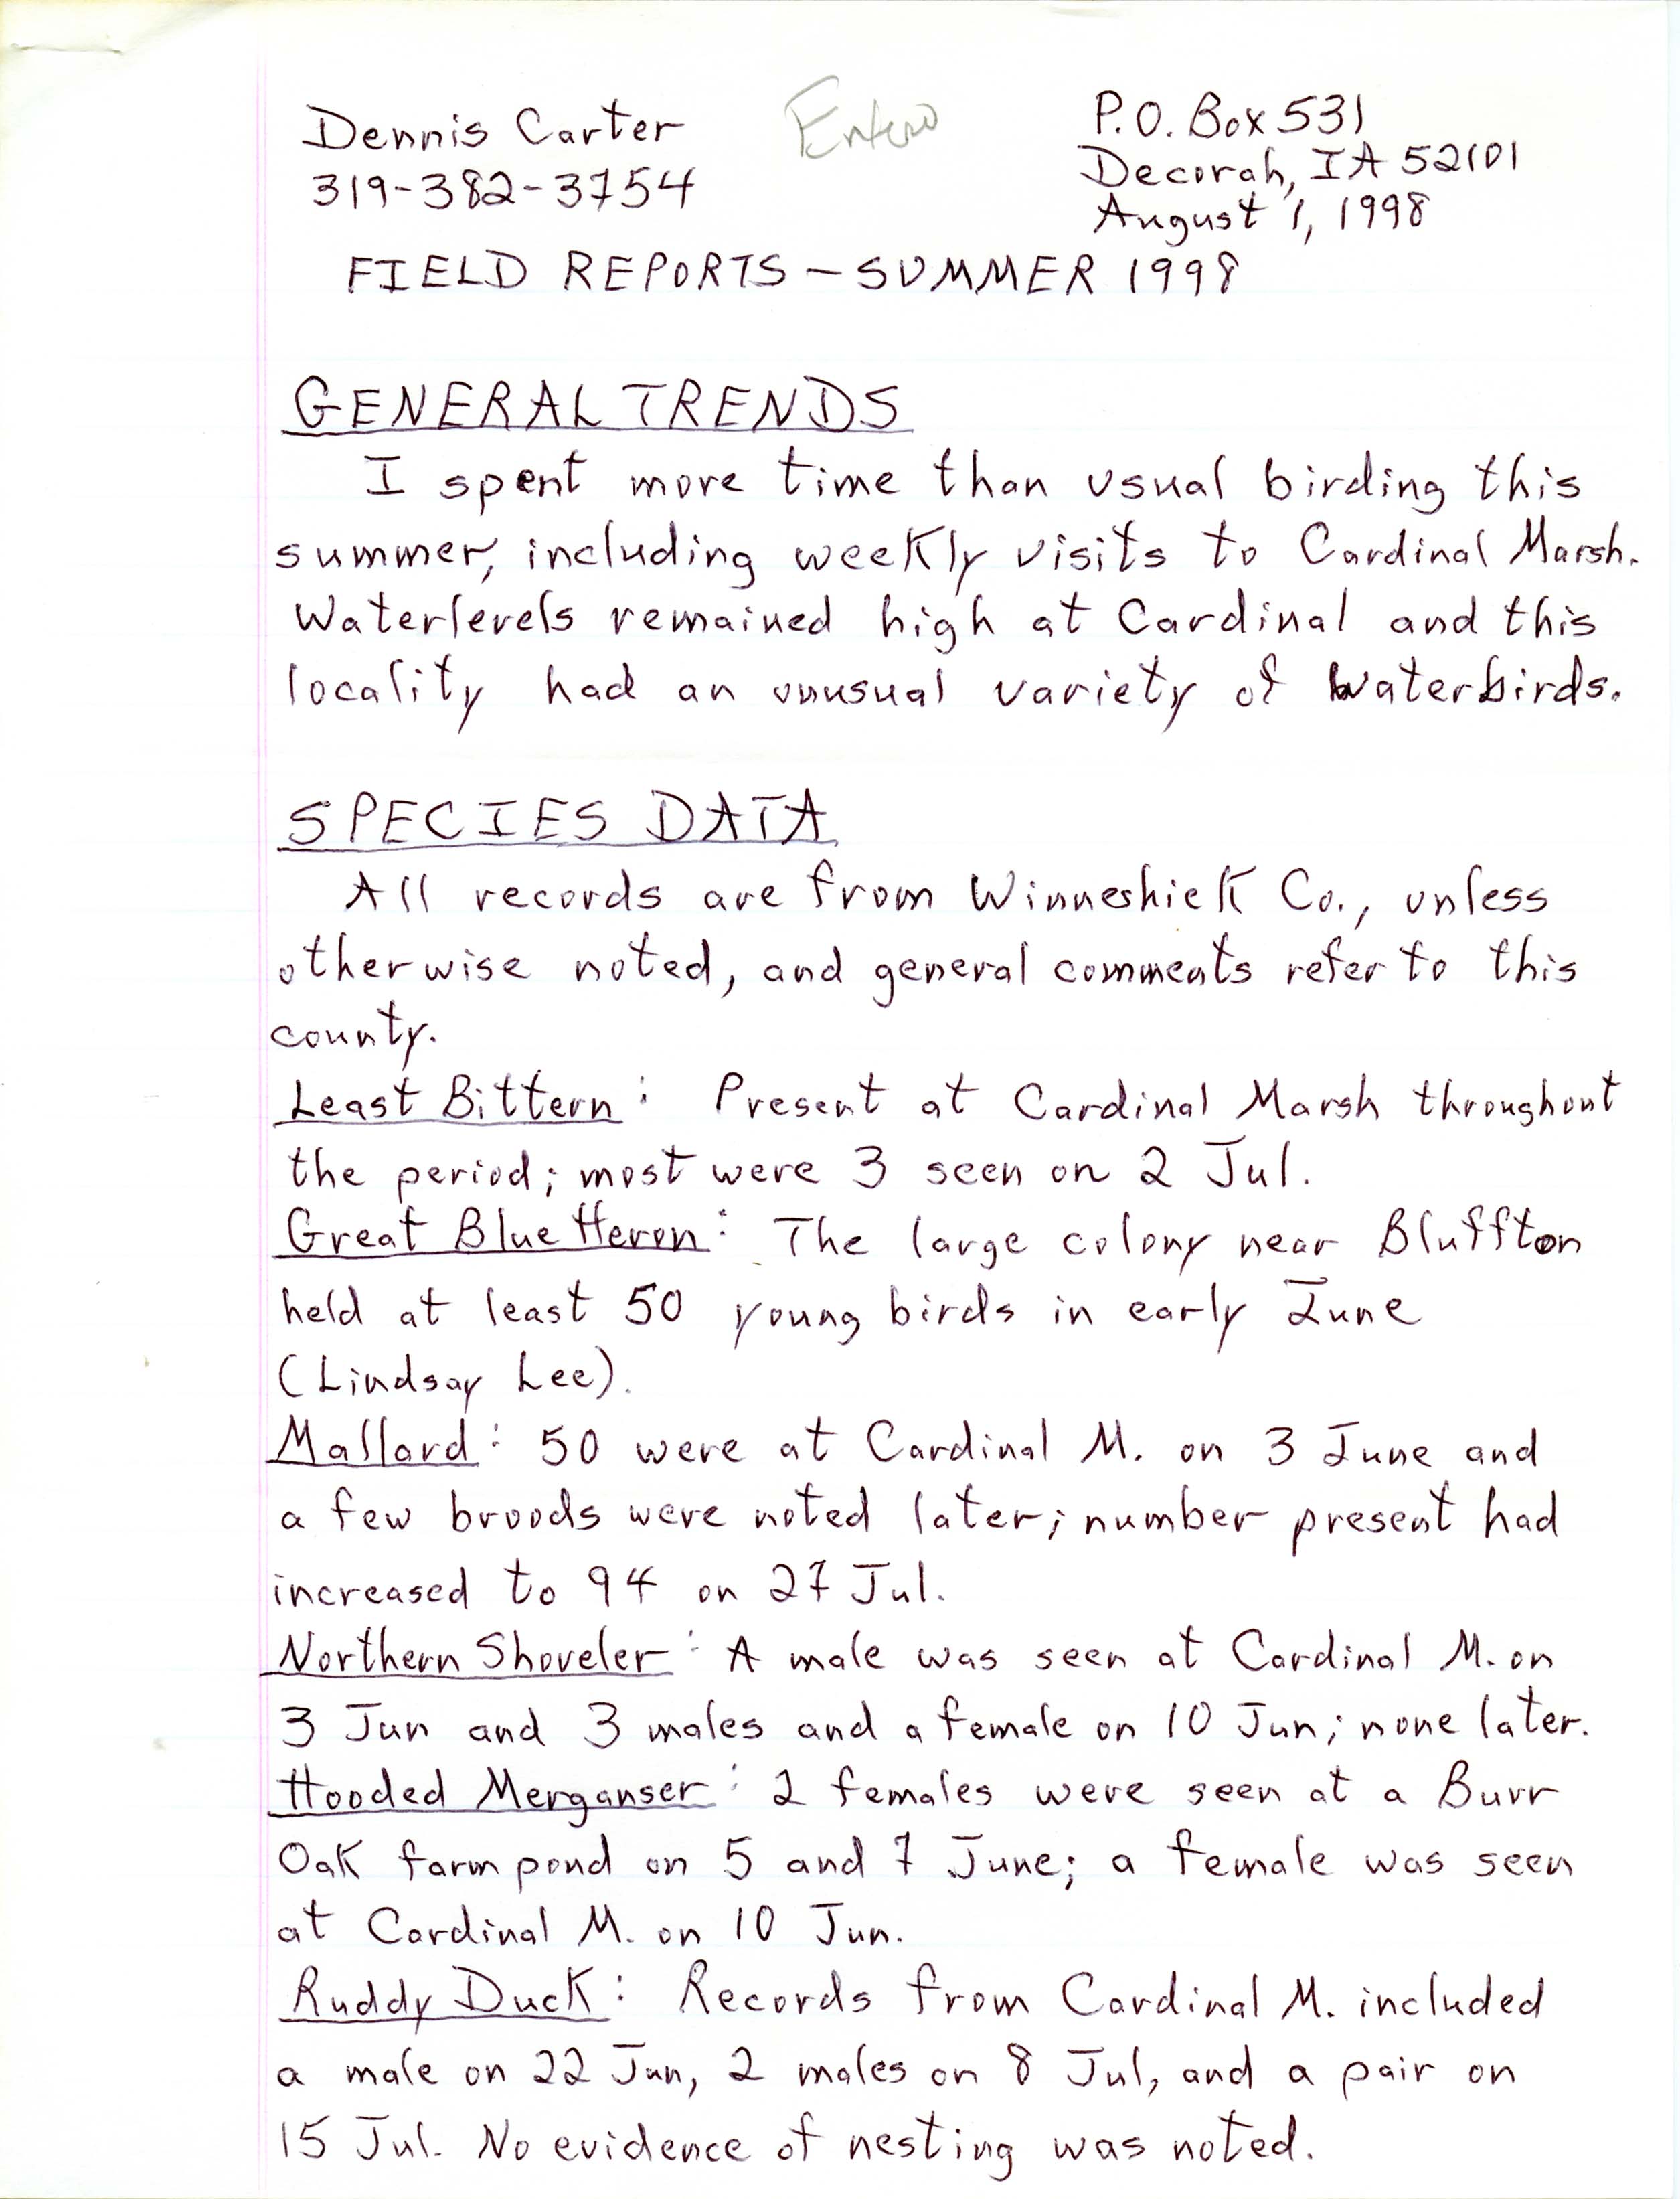 Field reports, summer 1998, Dennis Carter